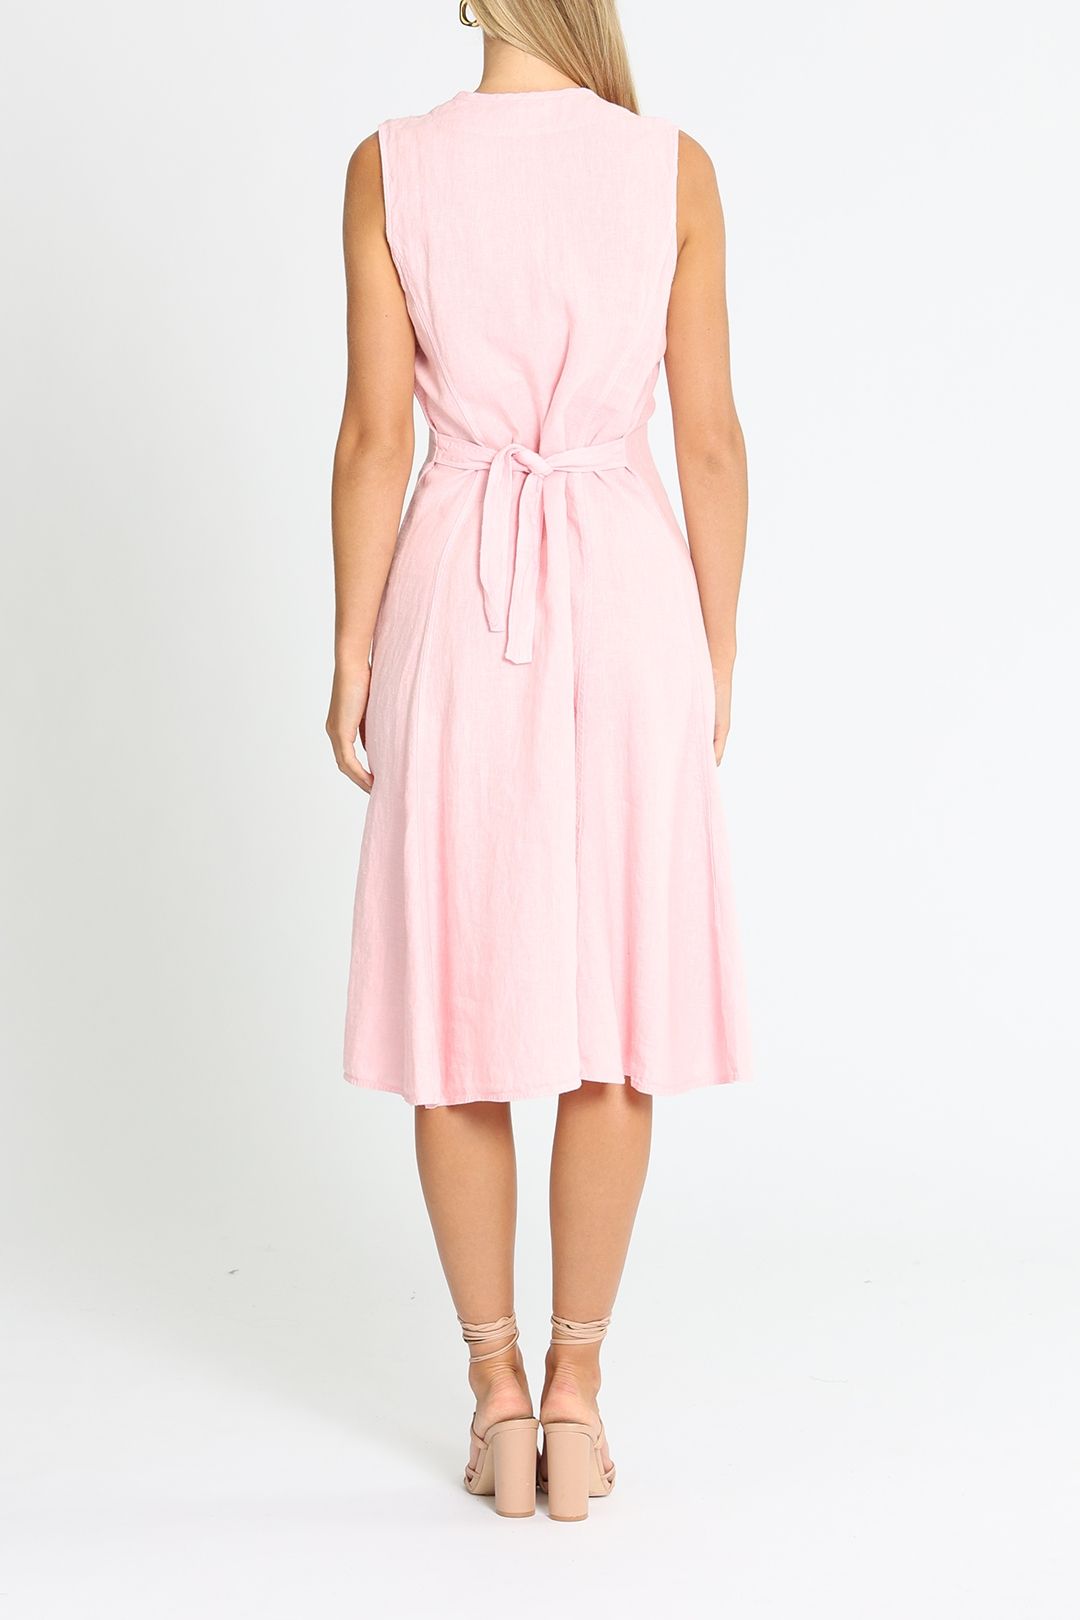 Ralph Lauren Linen Midi Dress Pink Waist Tie